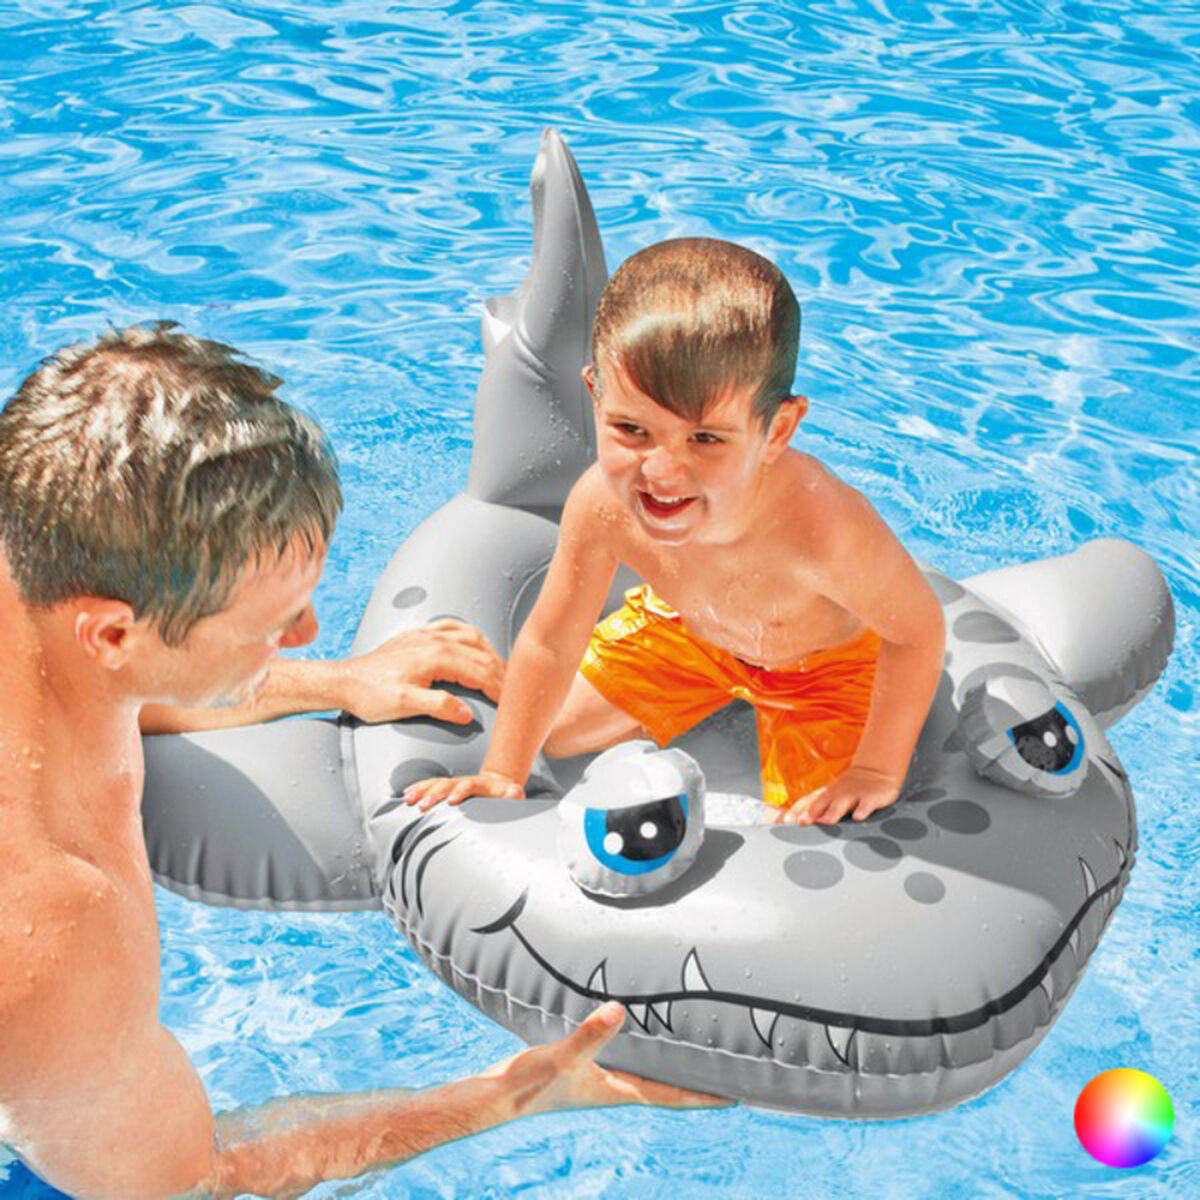 Inflatable pool figure Intex 59380